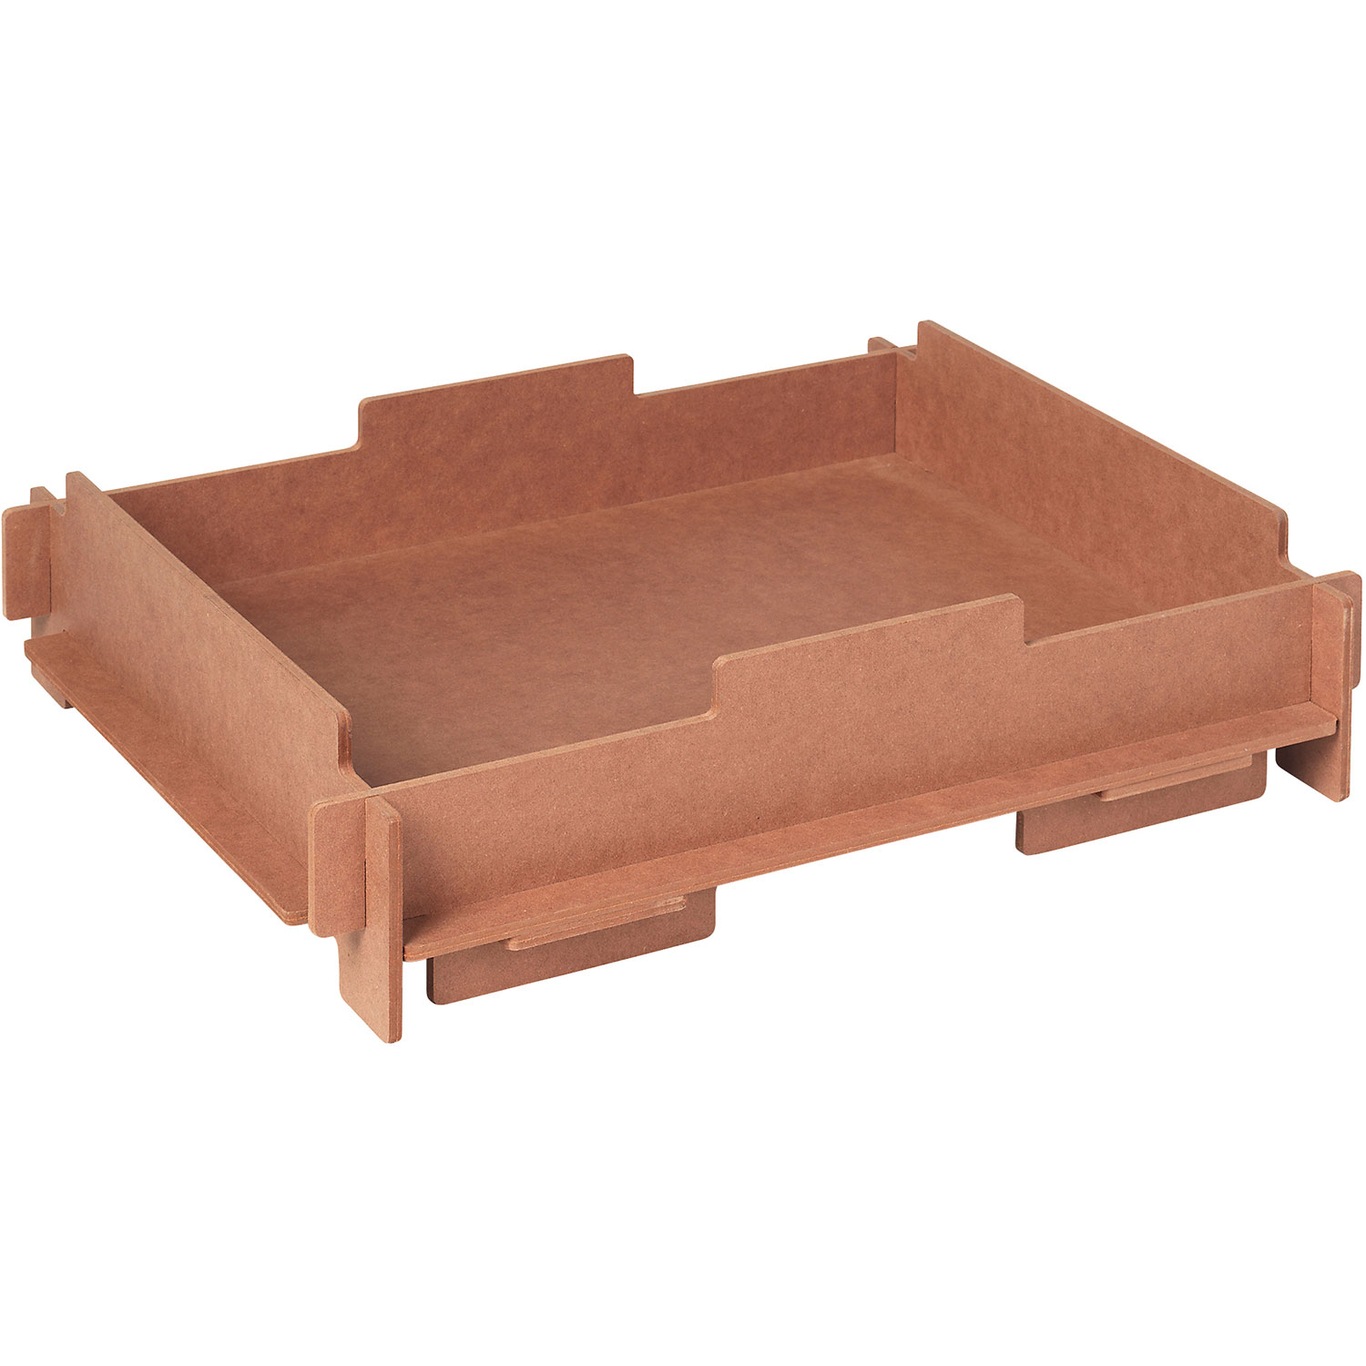 Stacie Storage Box Tray 34x44 cm, Brown